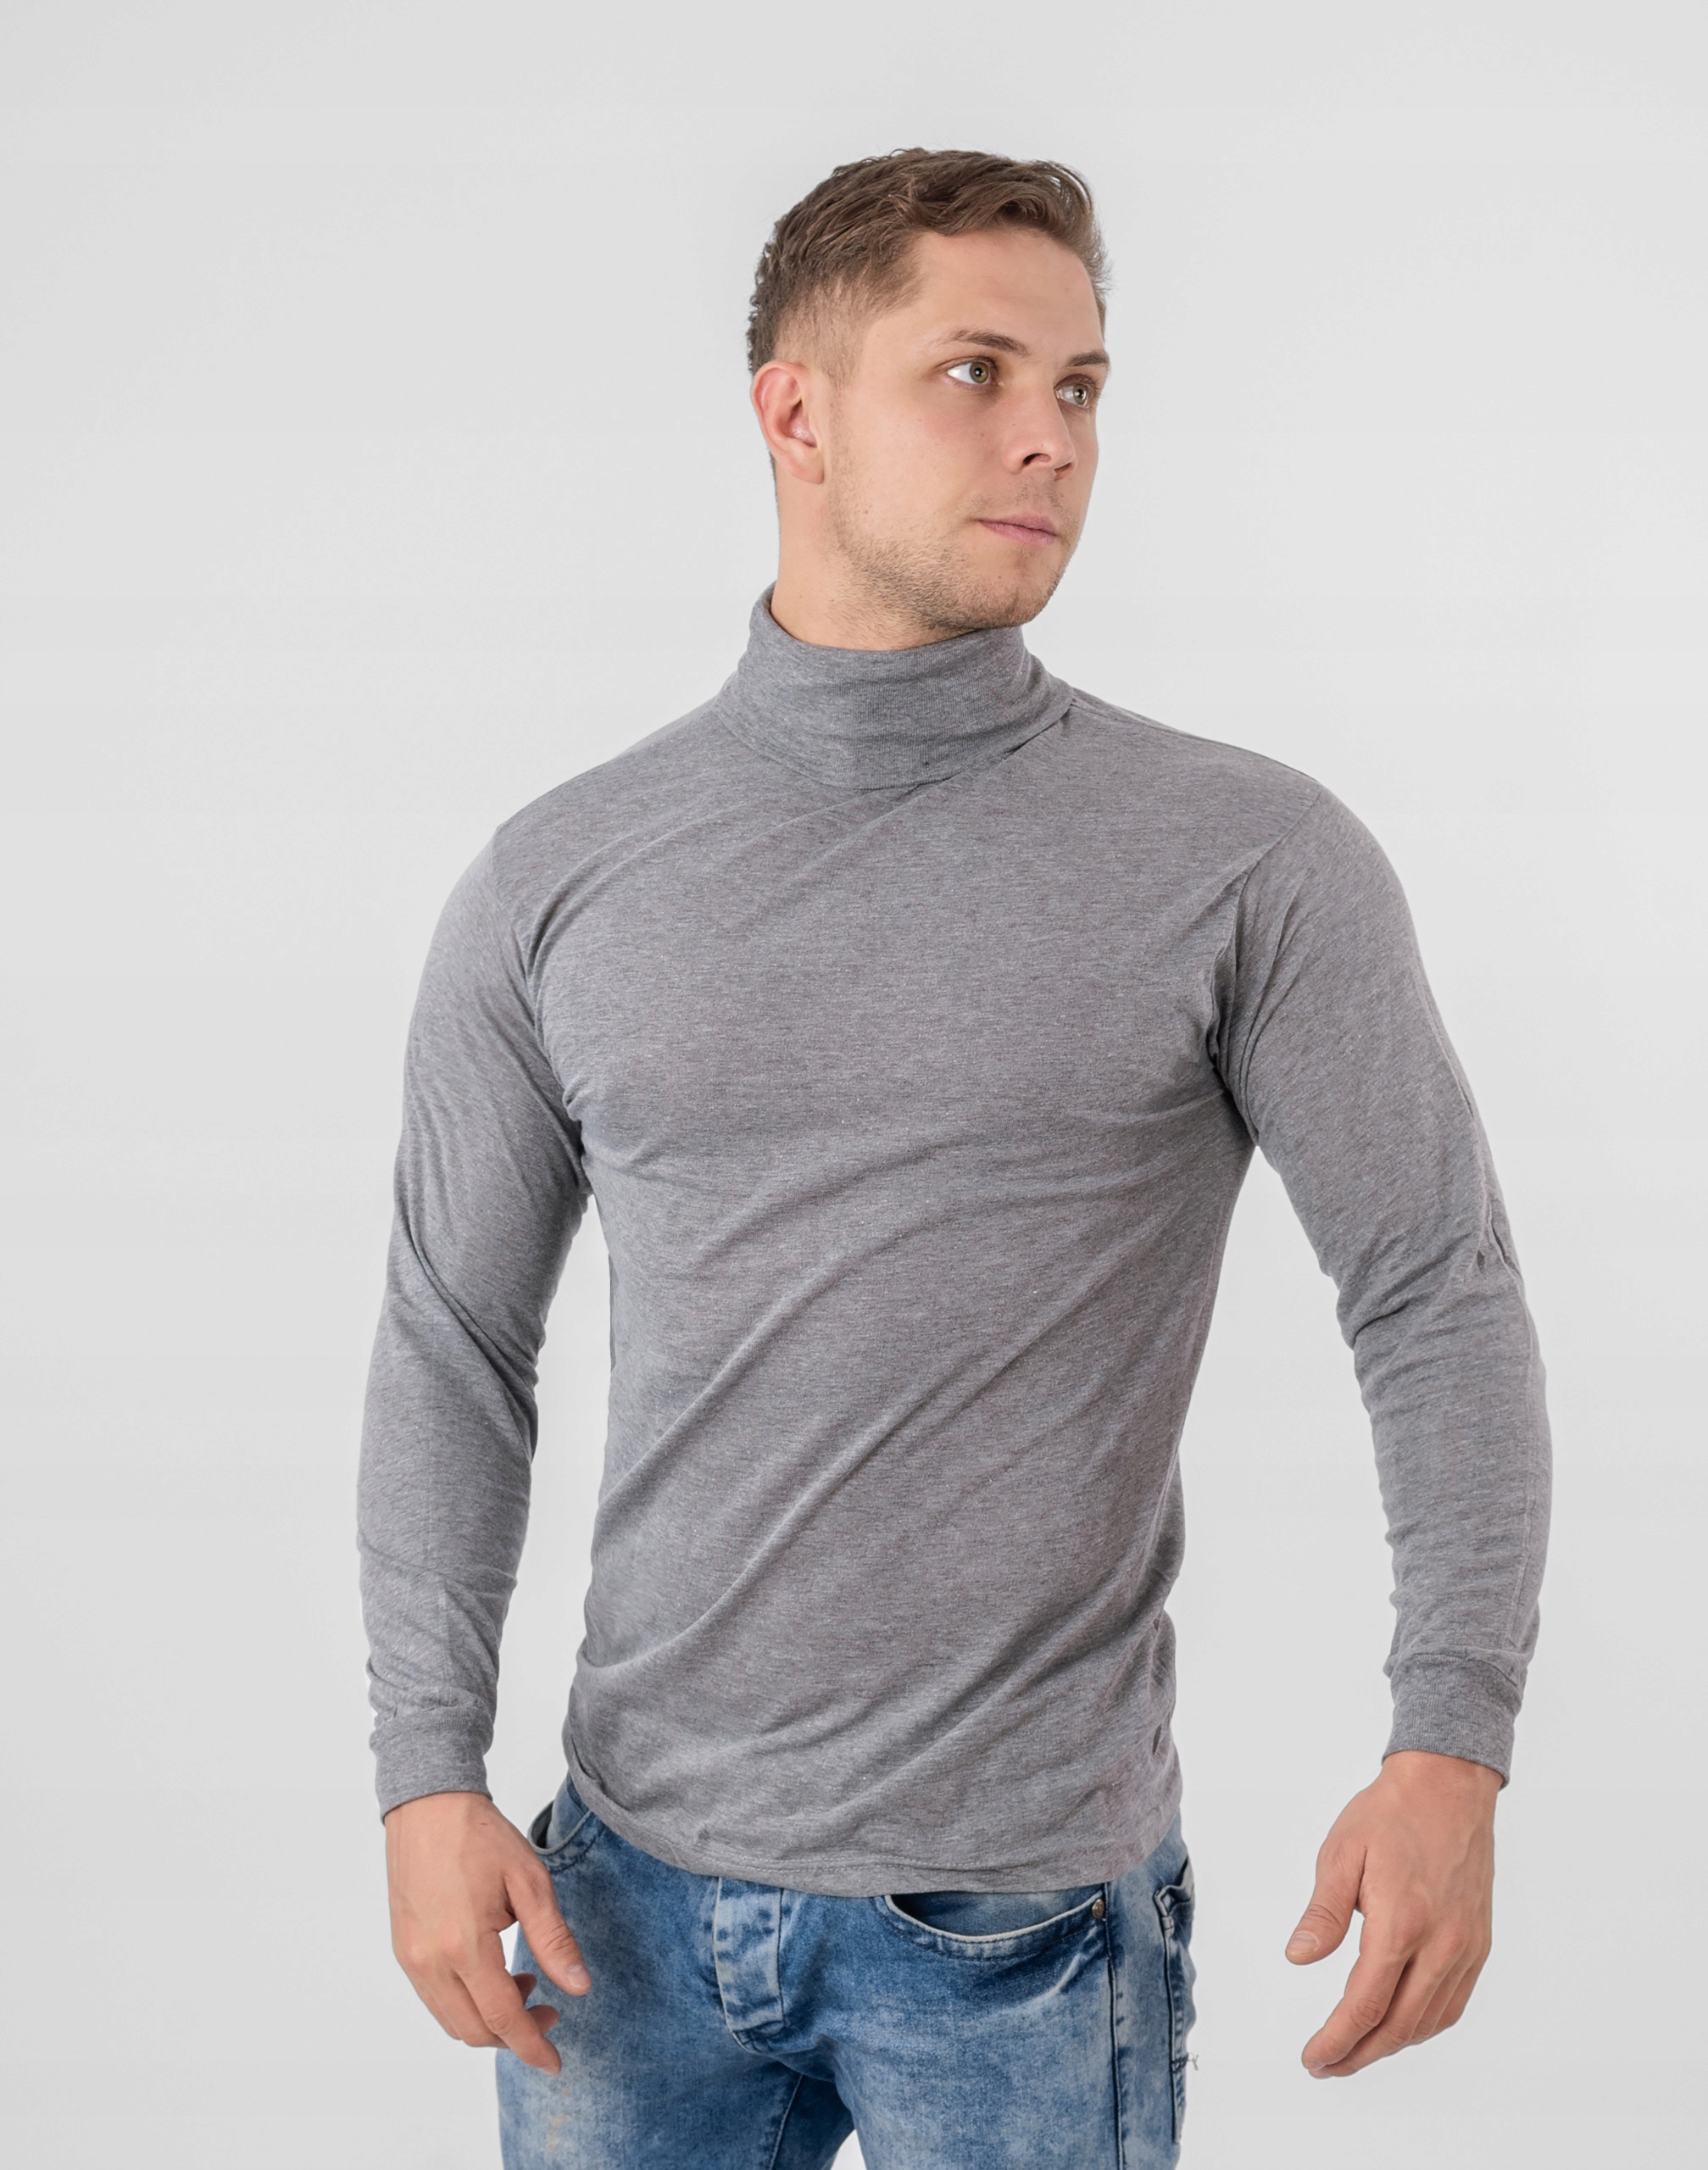 Элегантный тонкий водолазка мужской свитер GM01 XXL серый цвет серый, серебристый